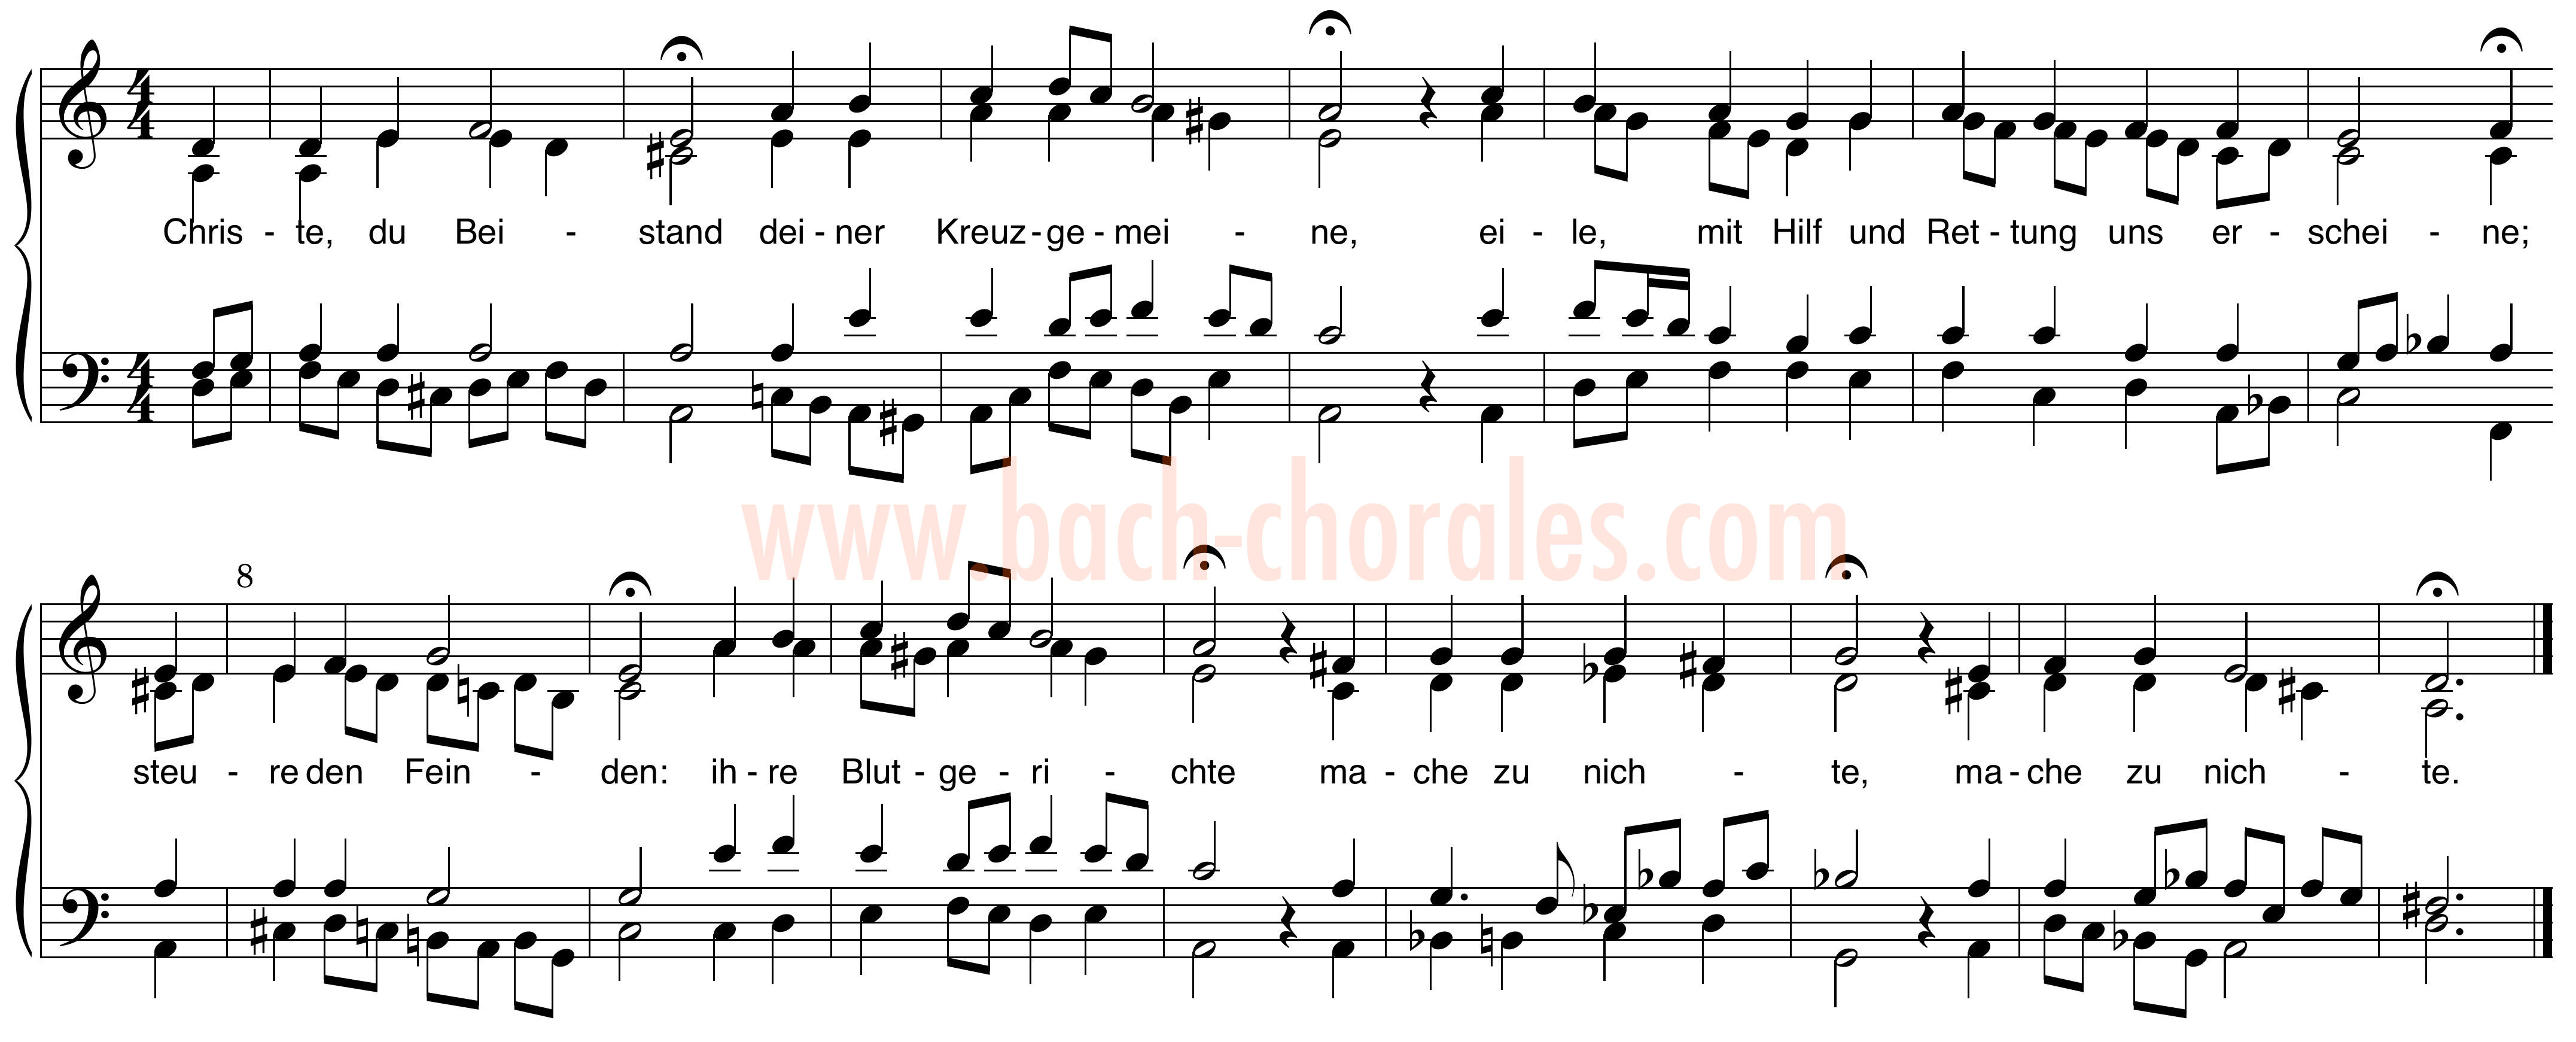 notenbeeld BWV 275 op https://www.bach-chorales.com/